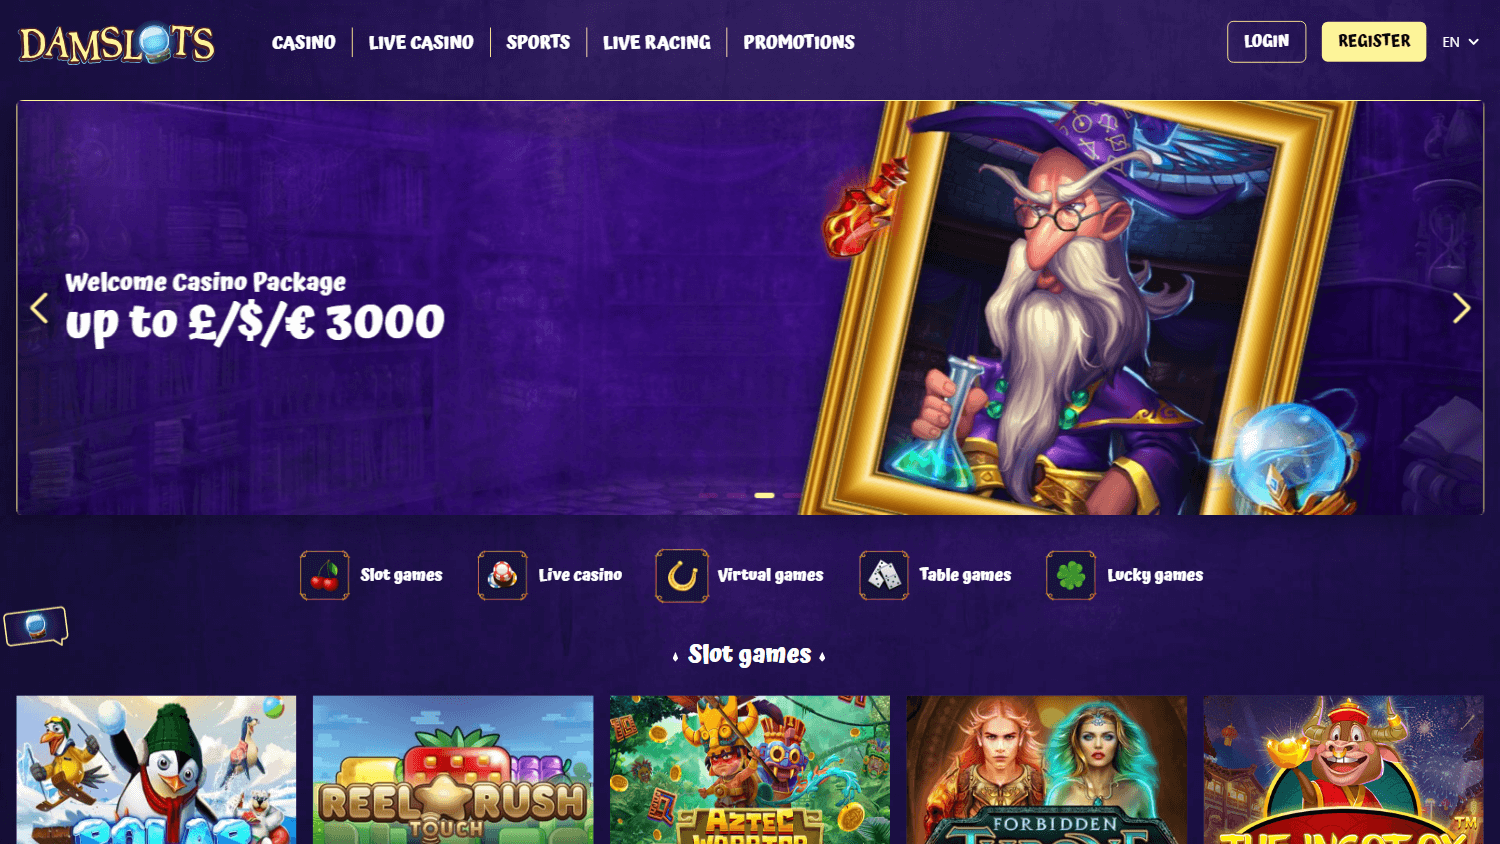 damslots_casino_homepage_desktop